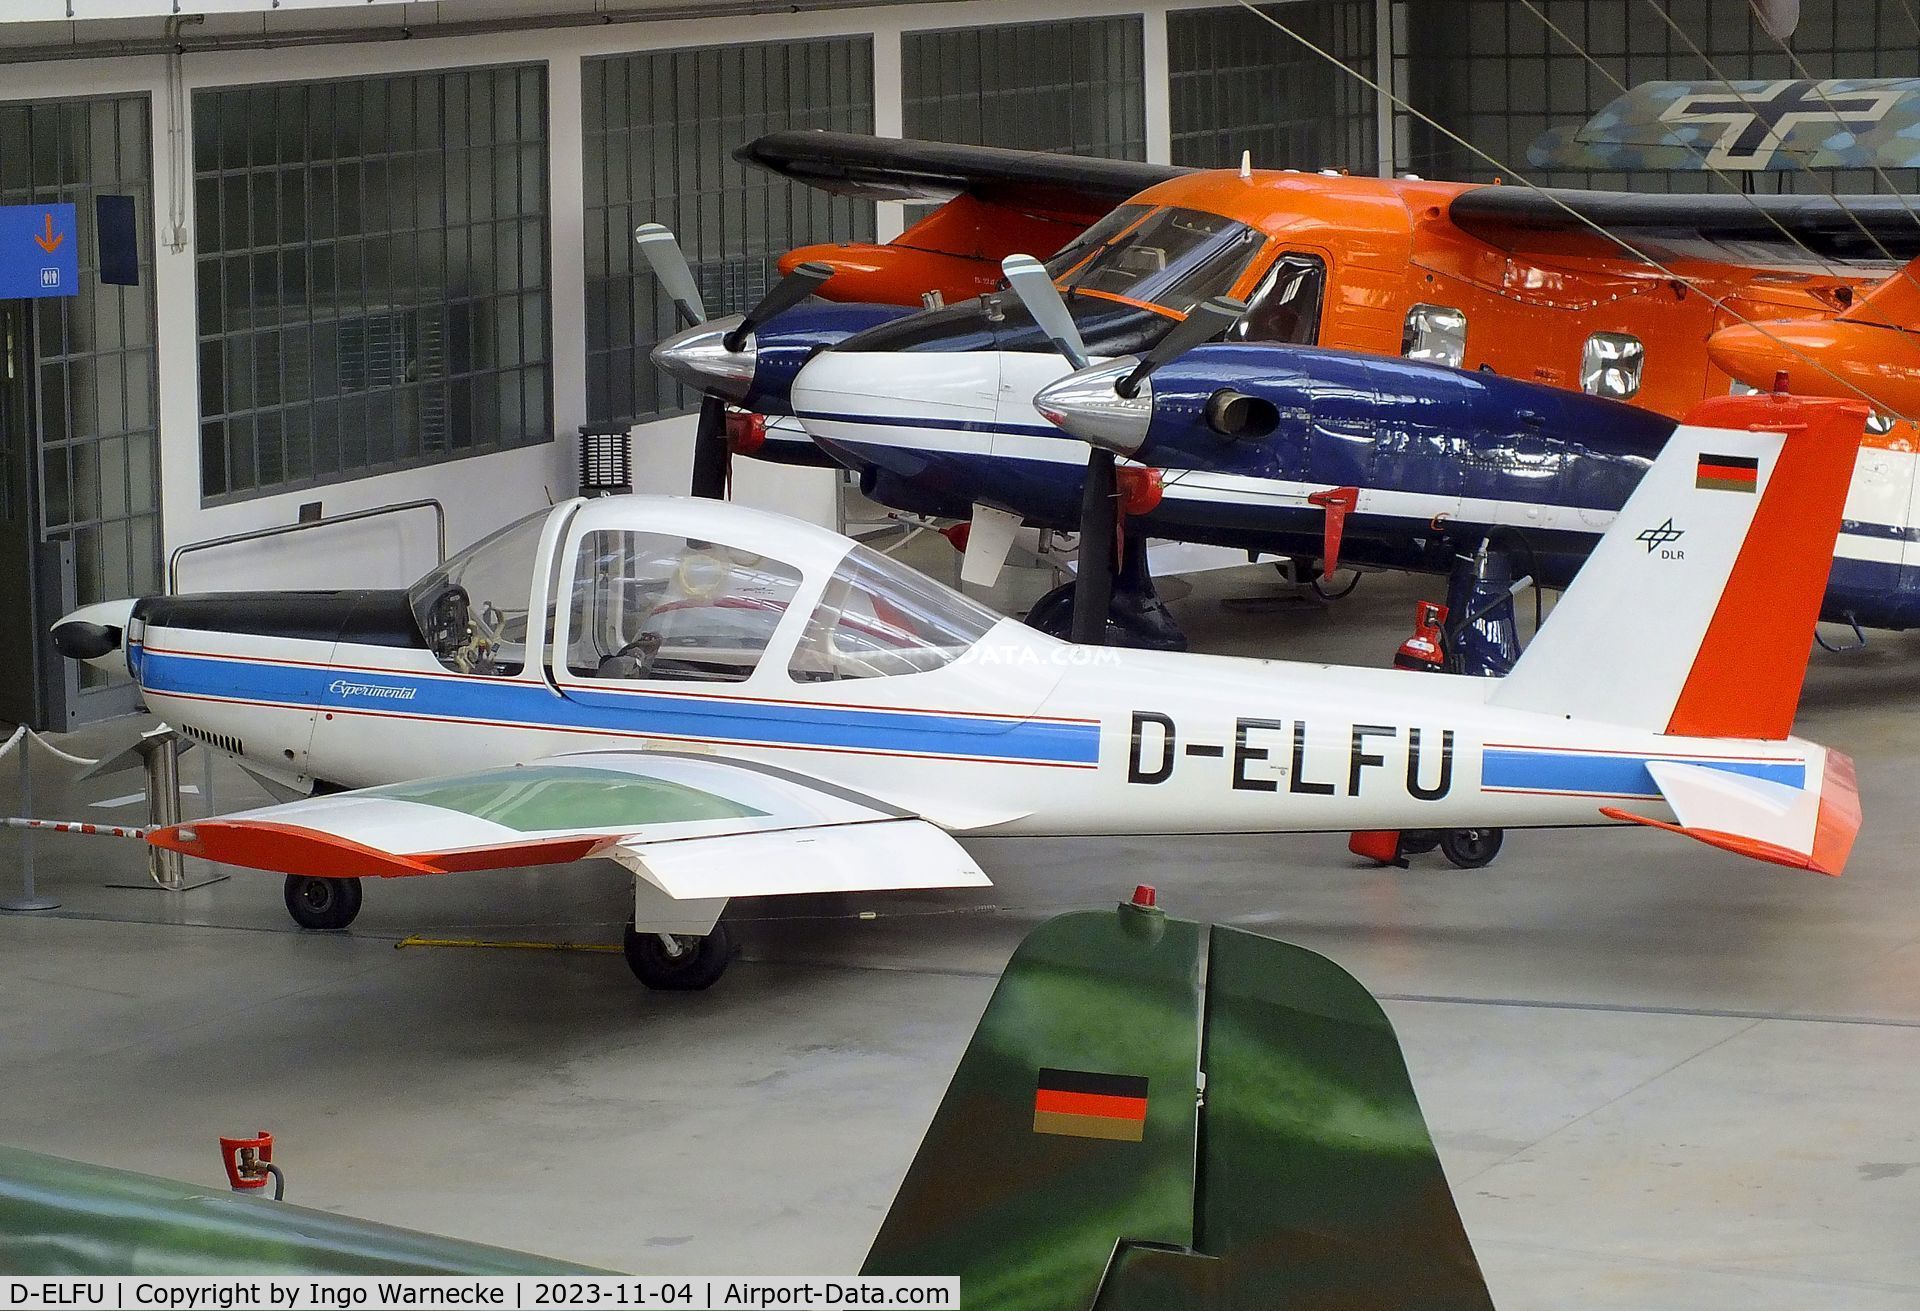 D-ELFU, 1968 Leichtflugtechnik-Union LFU-205 C/N V-1, Leichtflugtechnik-Union LFU-205 at the Flugwerft Schleißheim of Deutsches Museum, Oberschleißheim